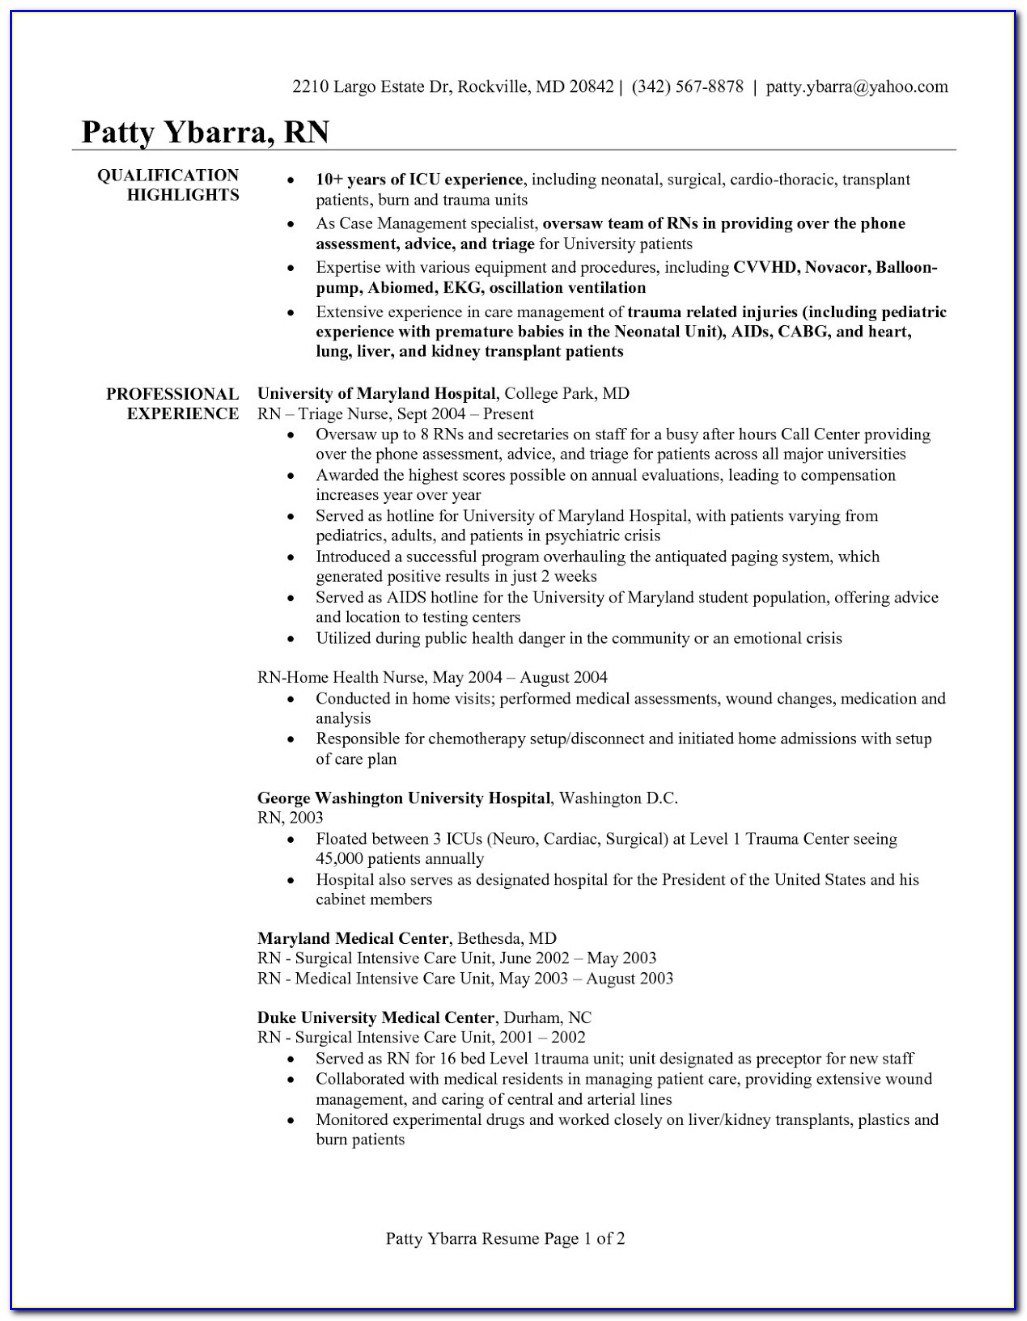 Registered Nurse Resume Summary Examples